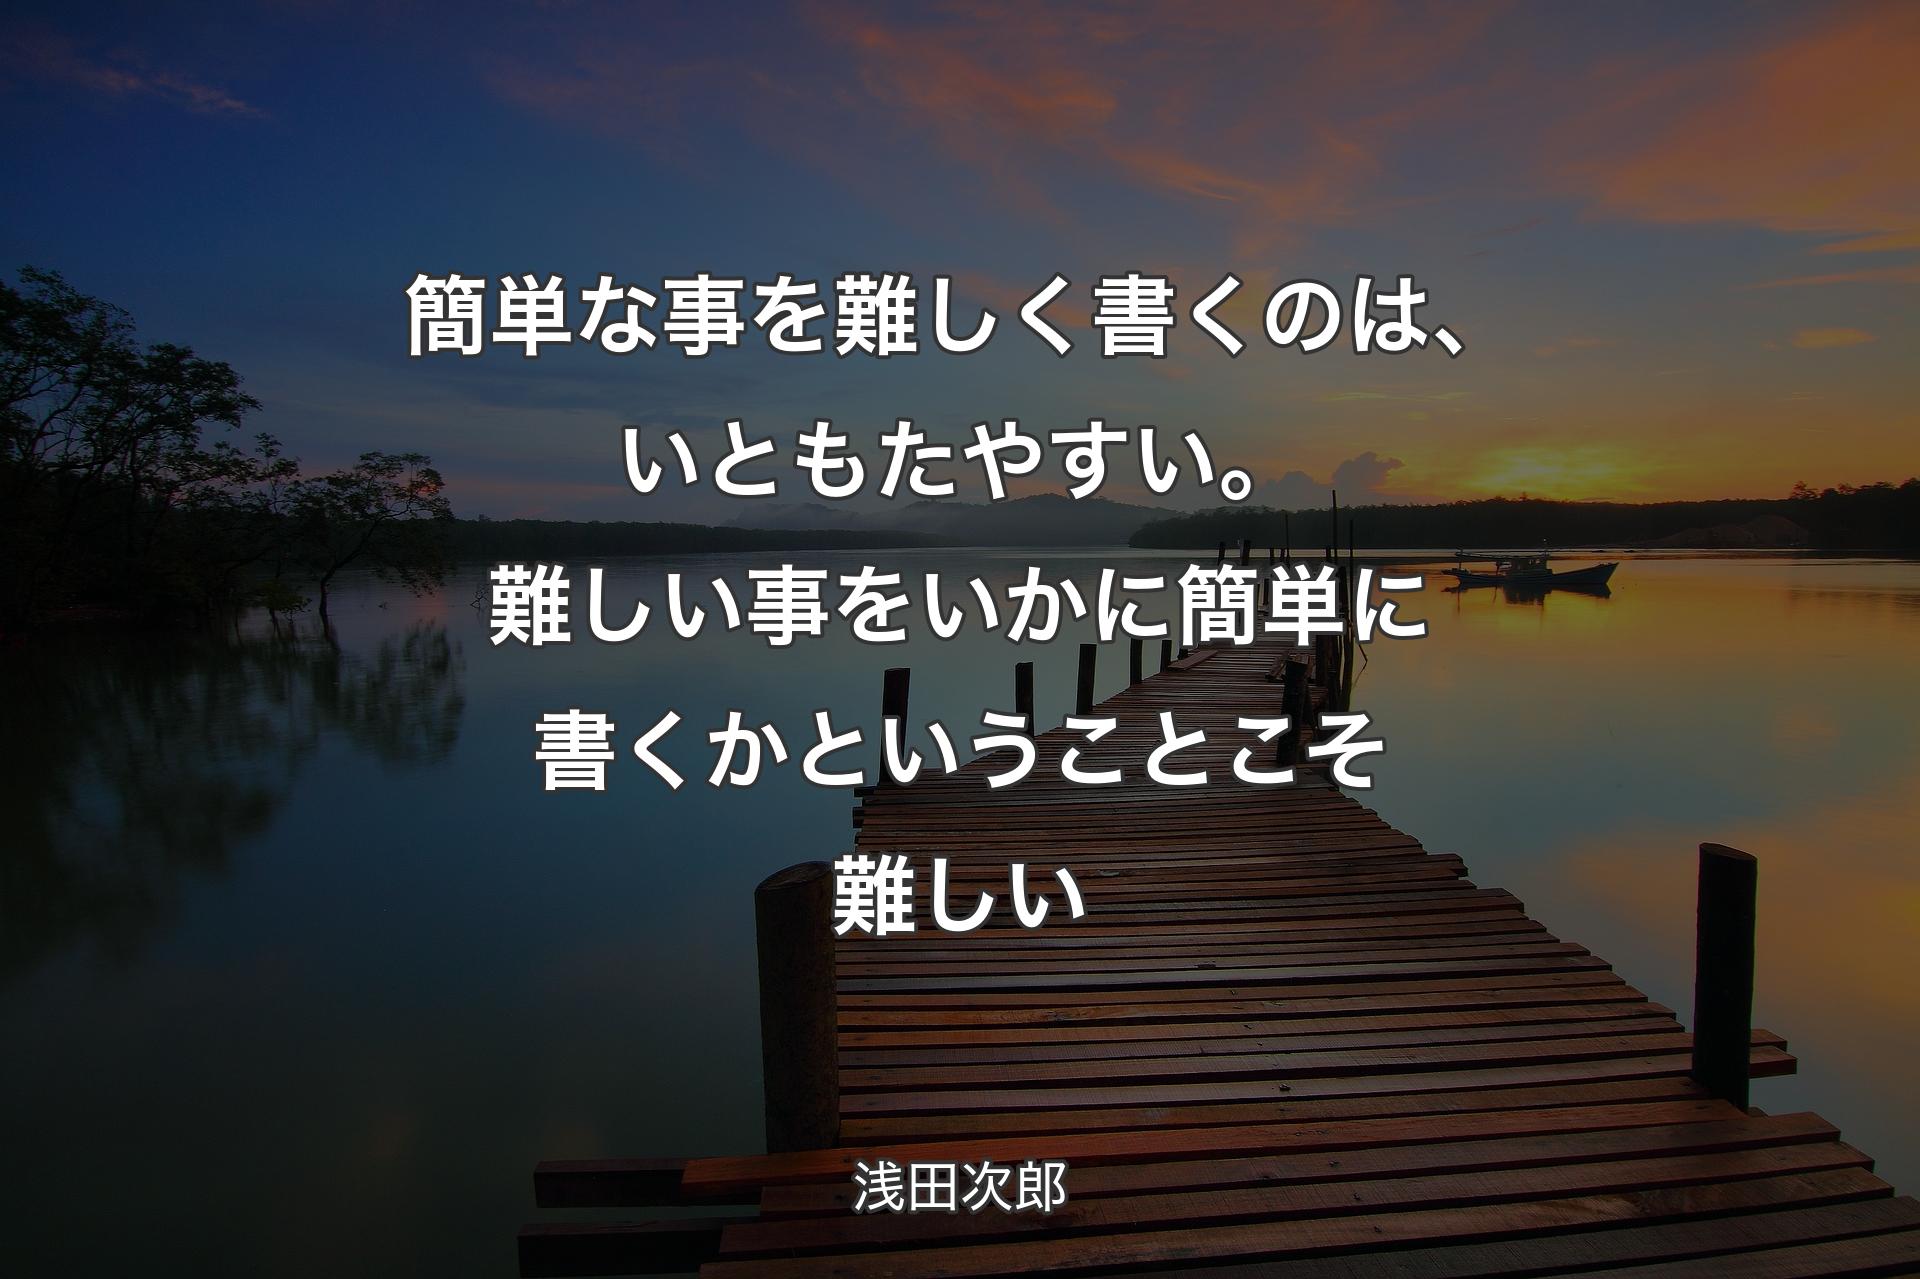 【背景3】簡単な事を�難しく書くのは、いともたやすい。難しい事をいかに簡単に書くかということこそ難しい - 浅田次郎